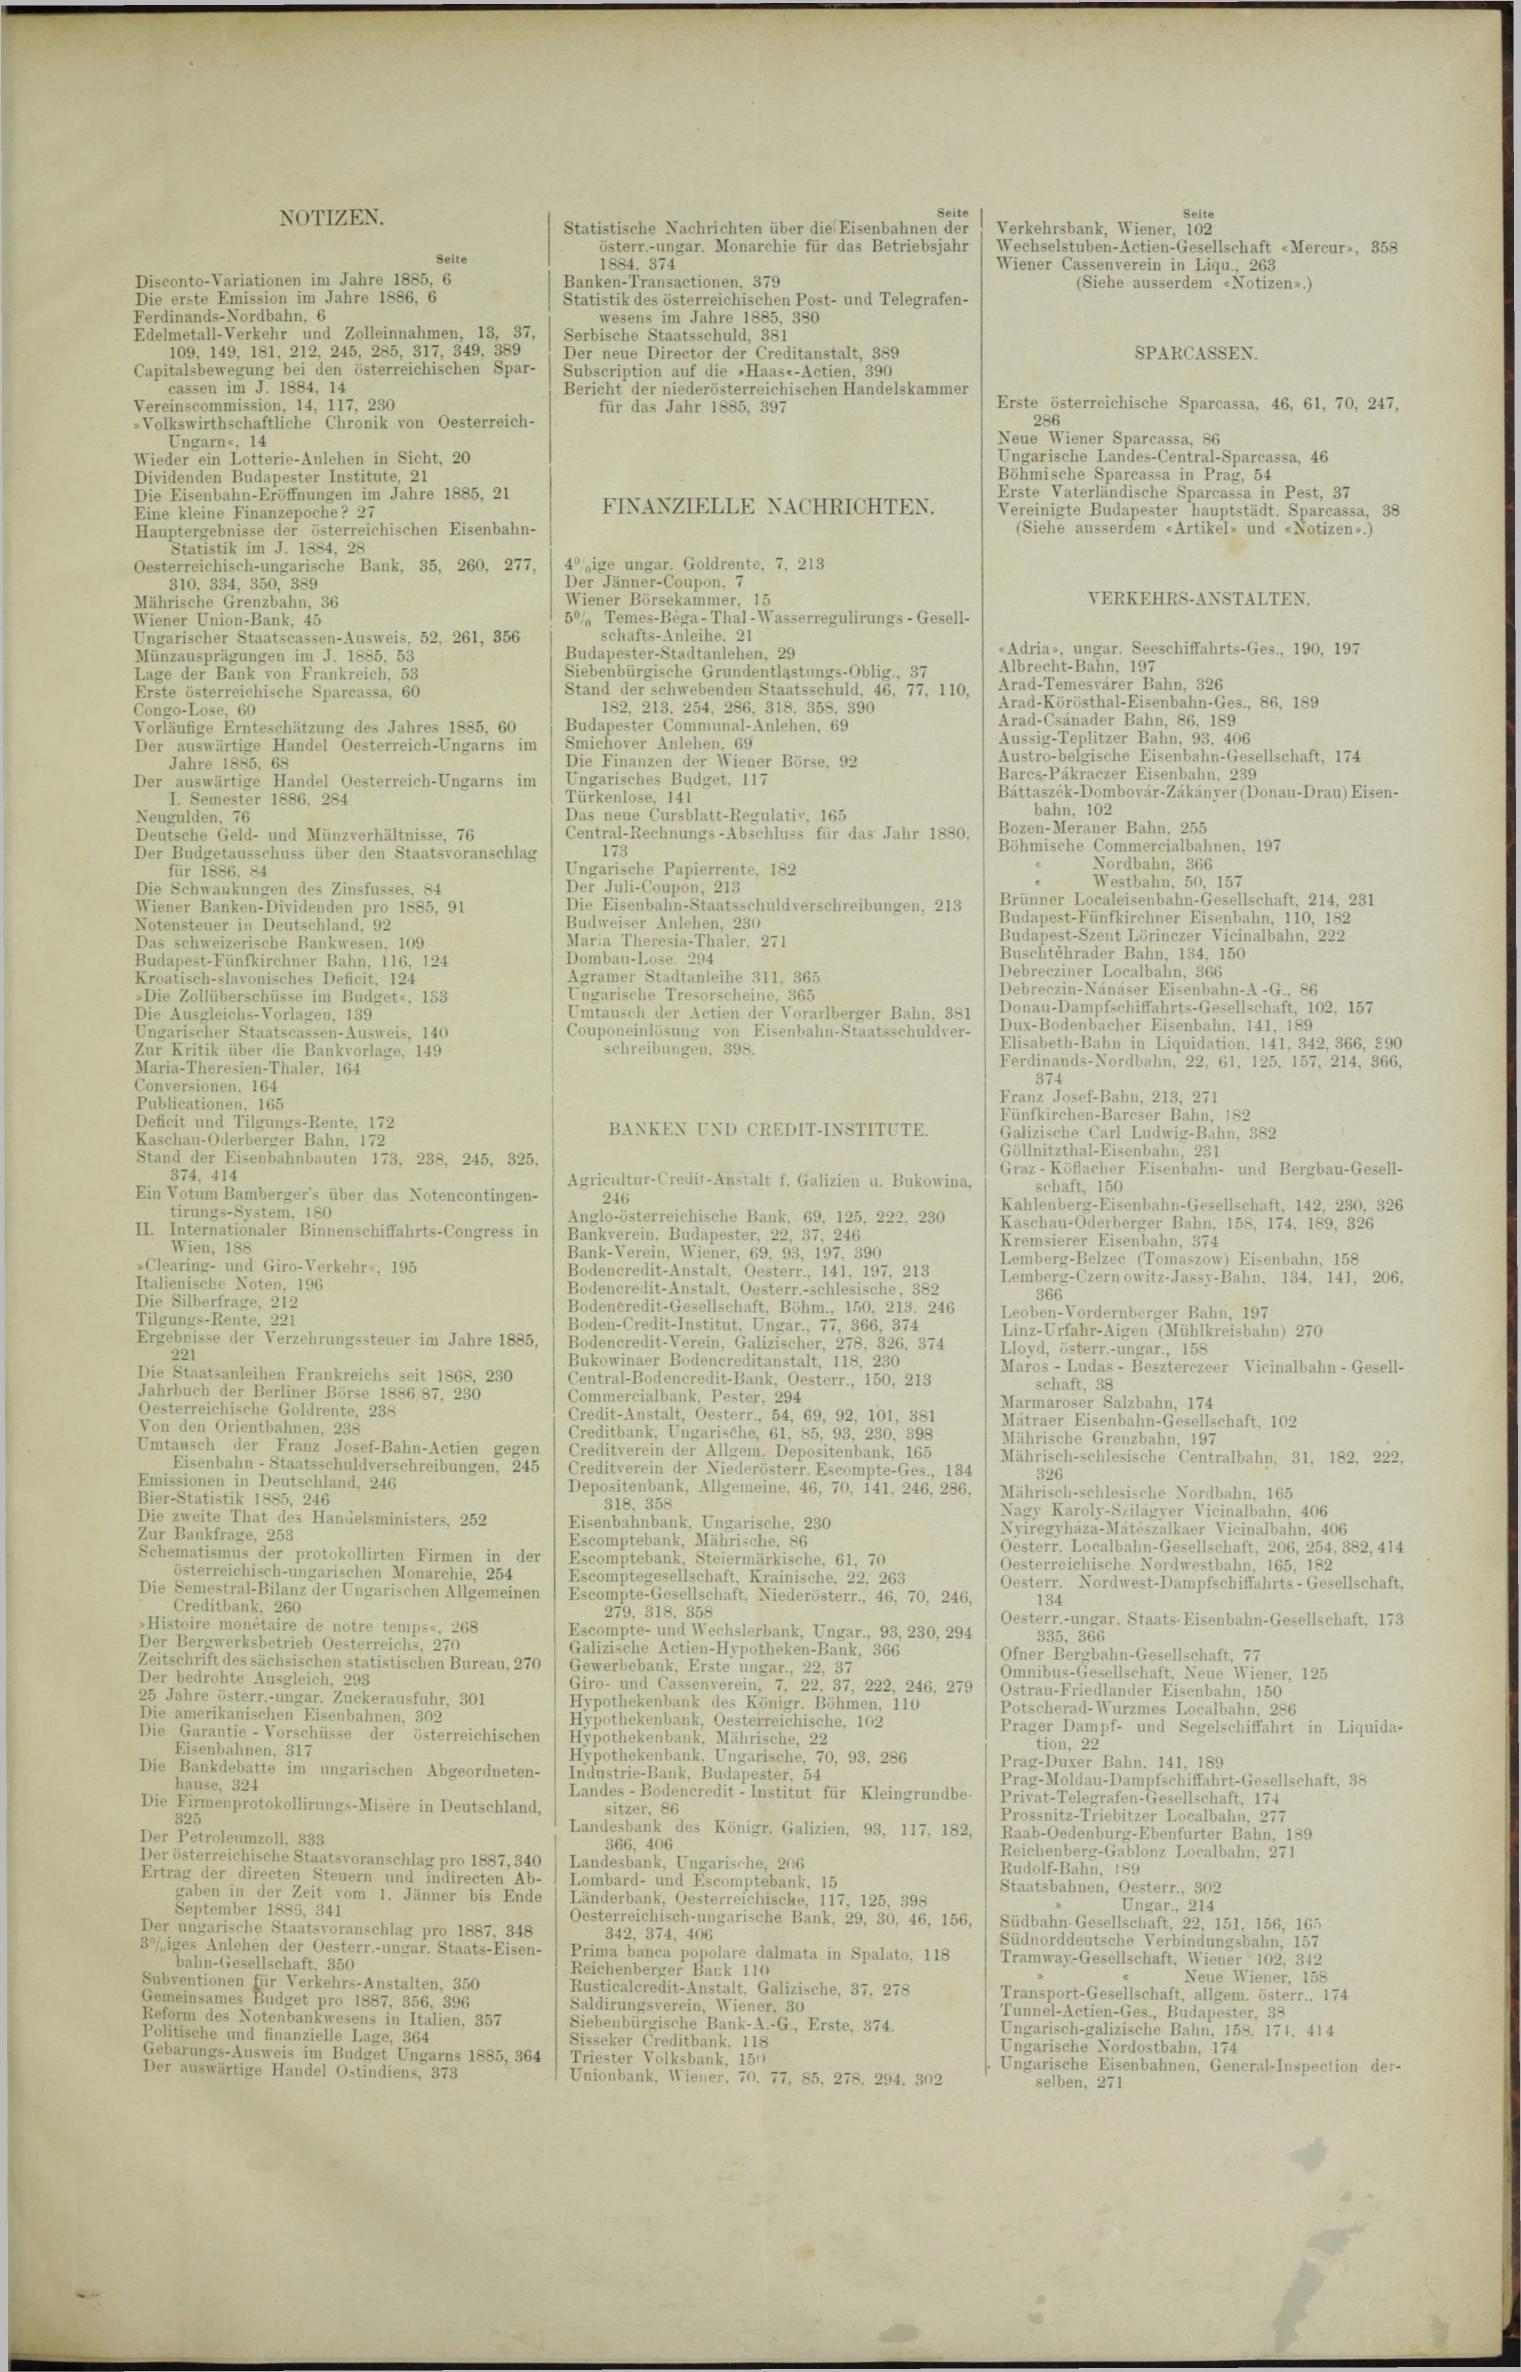 Der Tresor 21.01.1886 - Seite 11